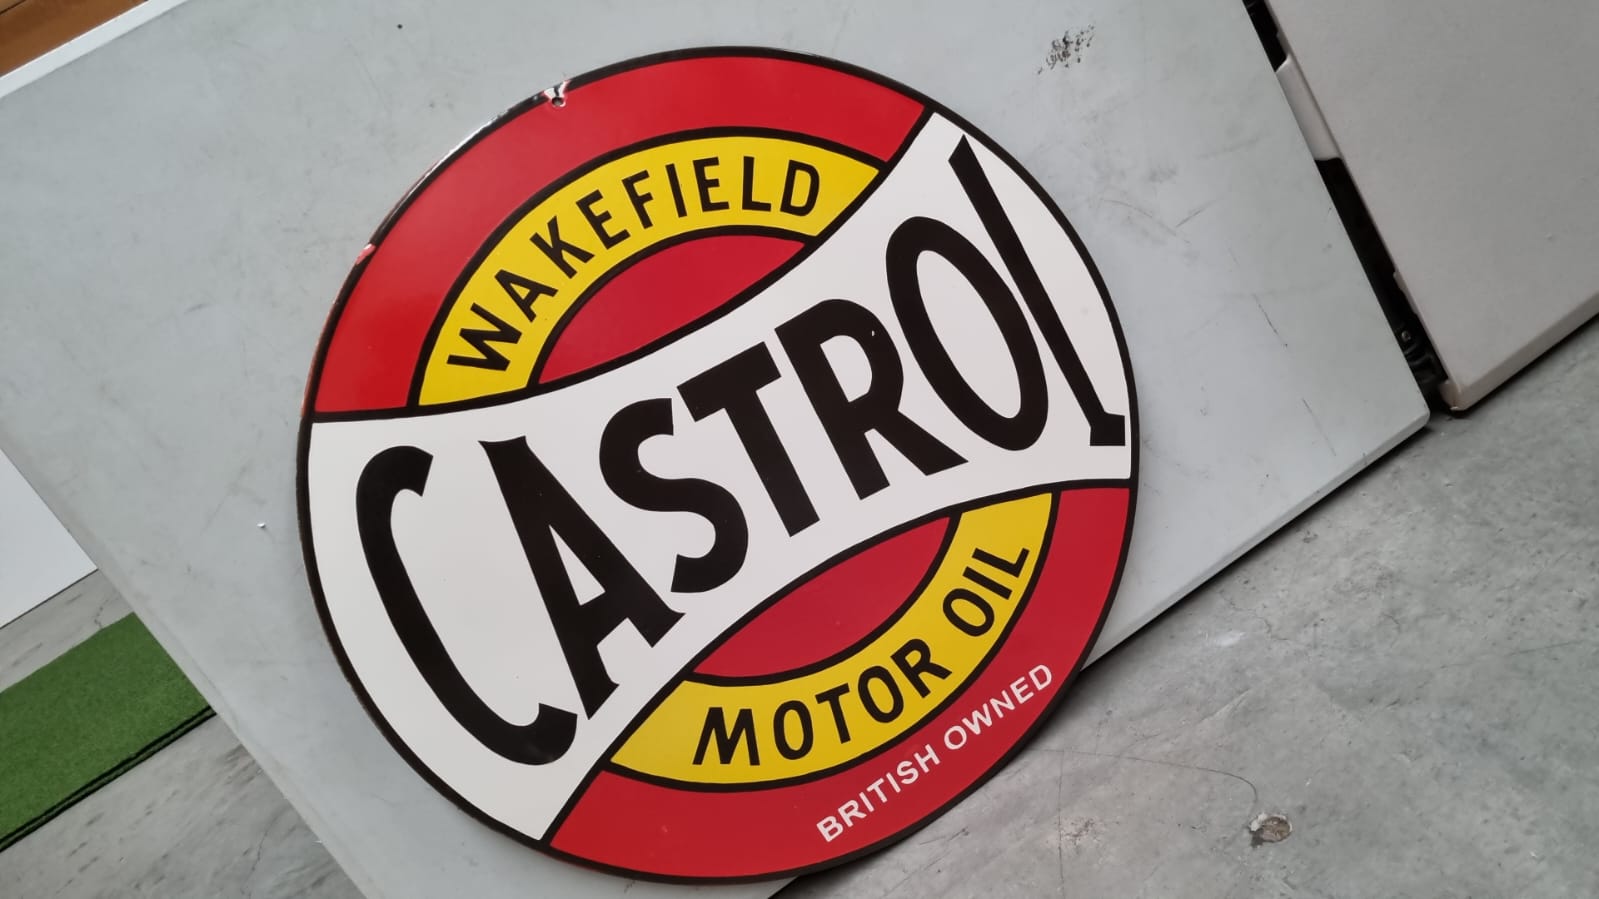 Castrol Motor Oil - ( ESC160 ) - Vintage World Australia - 2